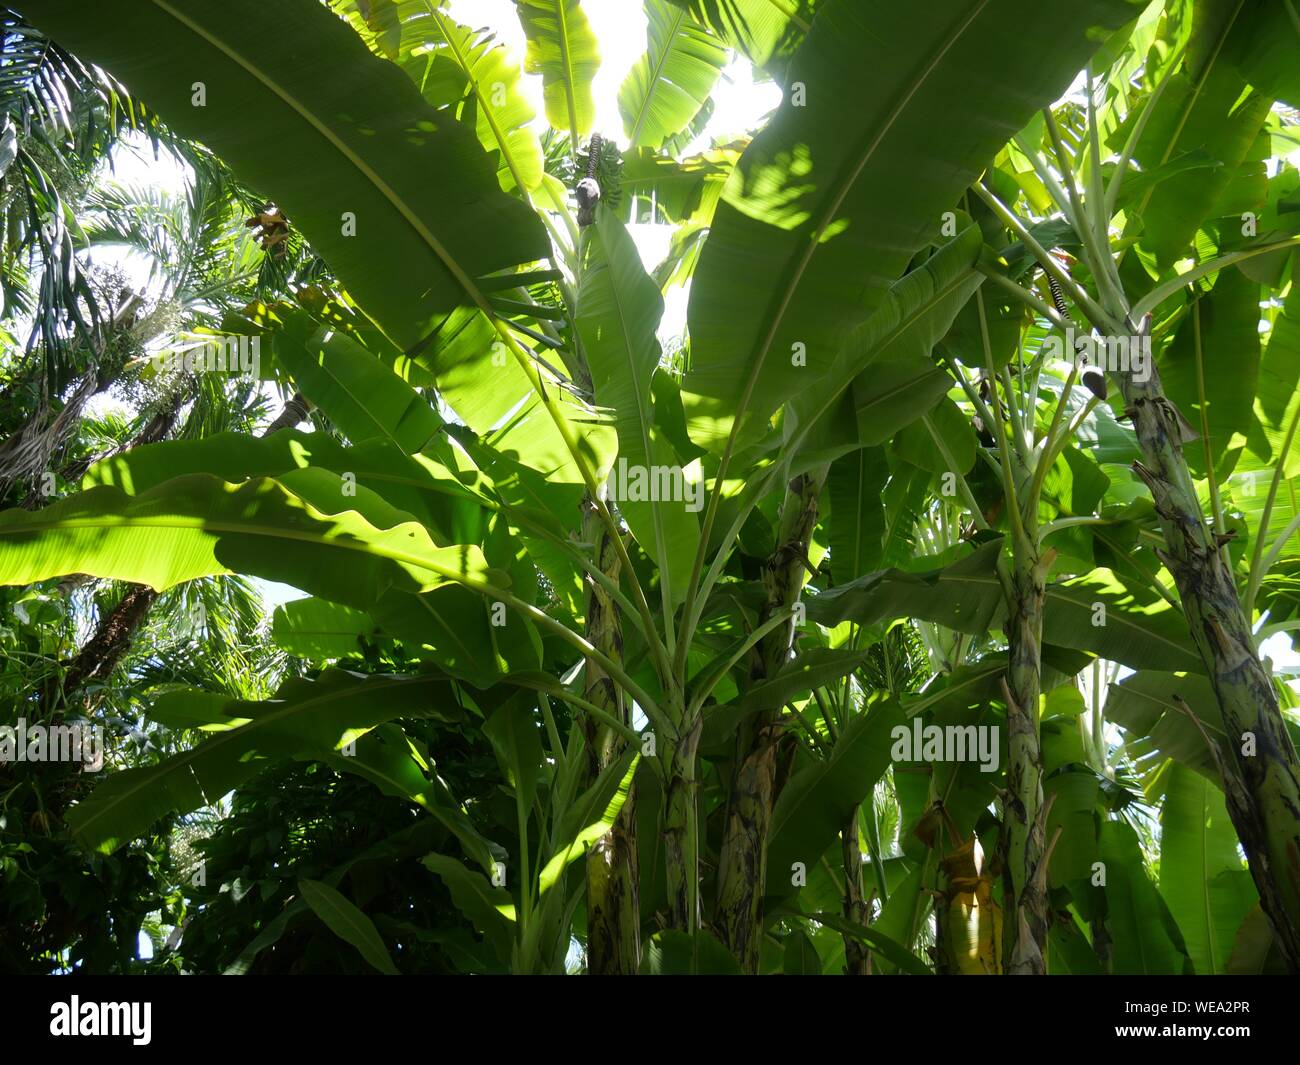 Upward shot of several young banana plants Stock Photo